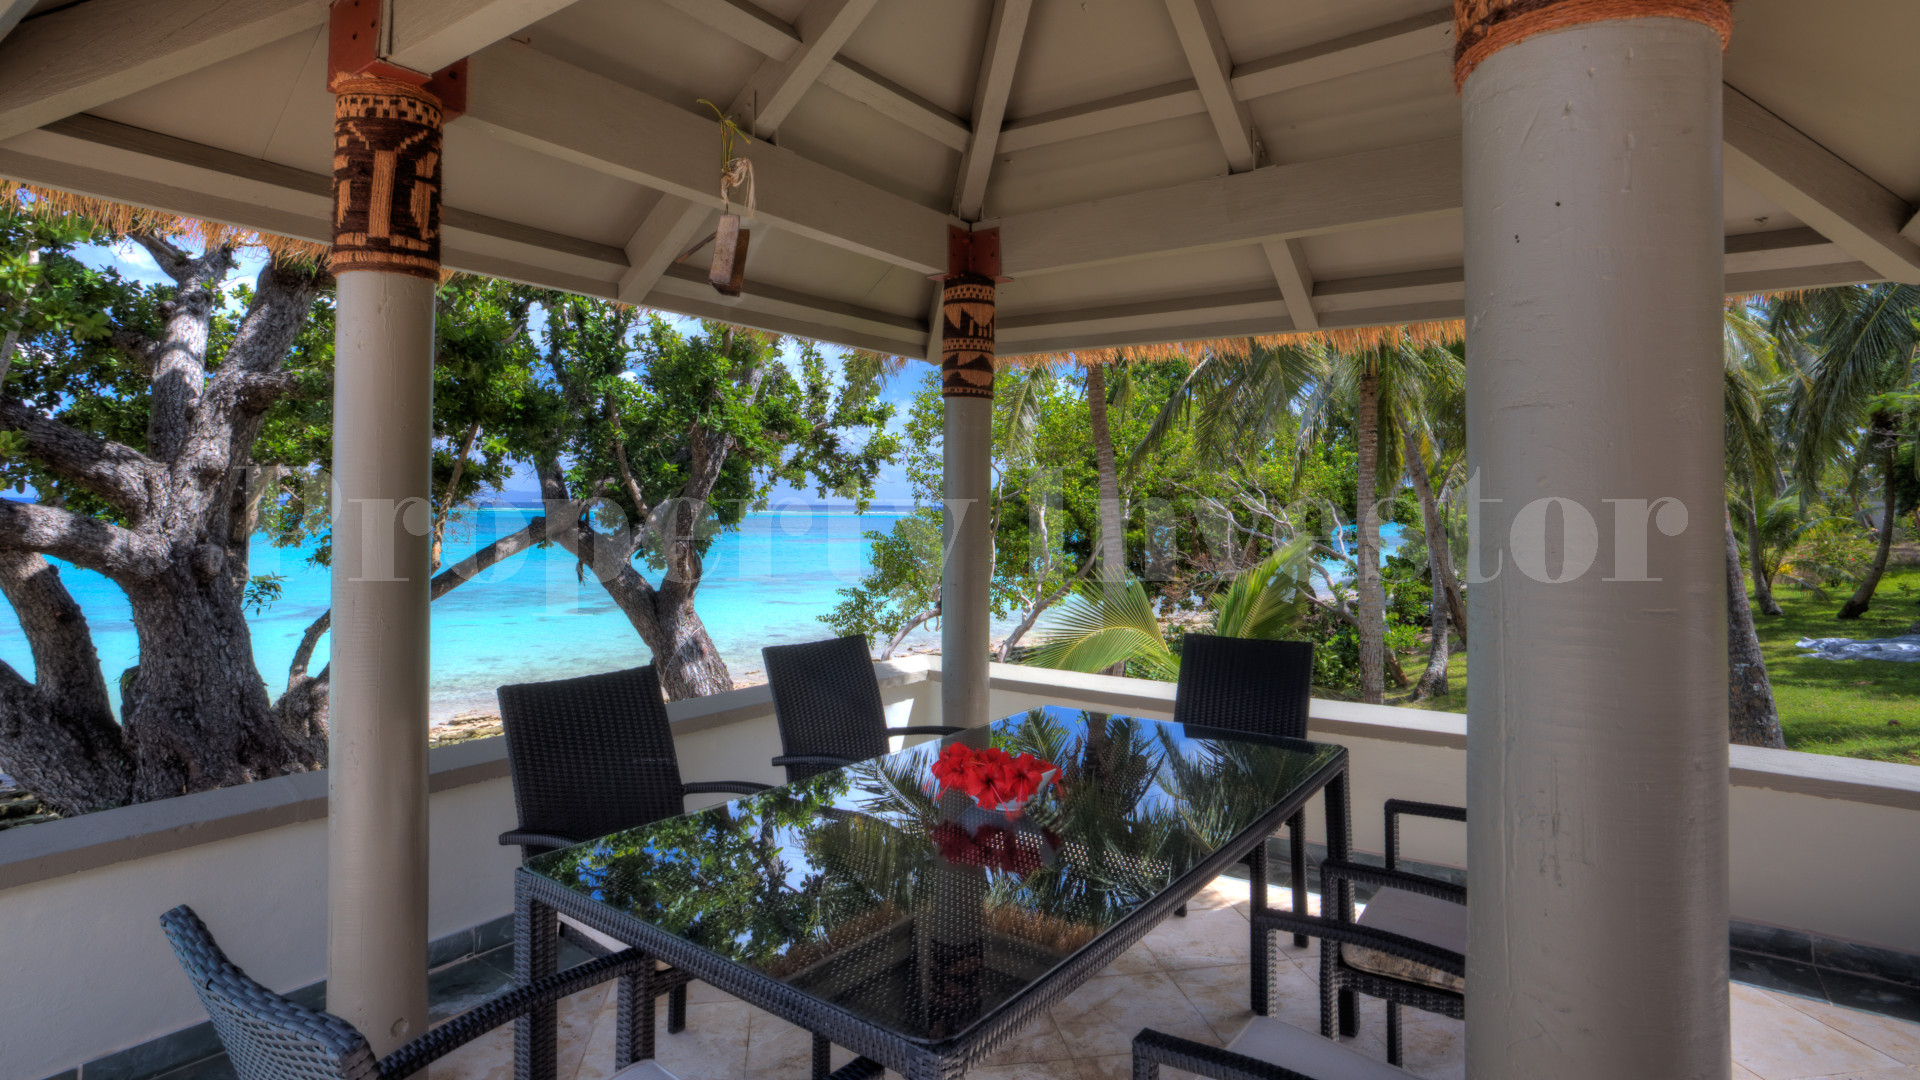 Продается частный остров 91 га с резиденцией и курортом со своей взлетной полосой и гольф полем на Фиджи